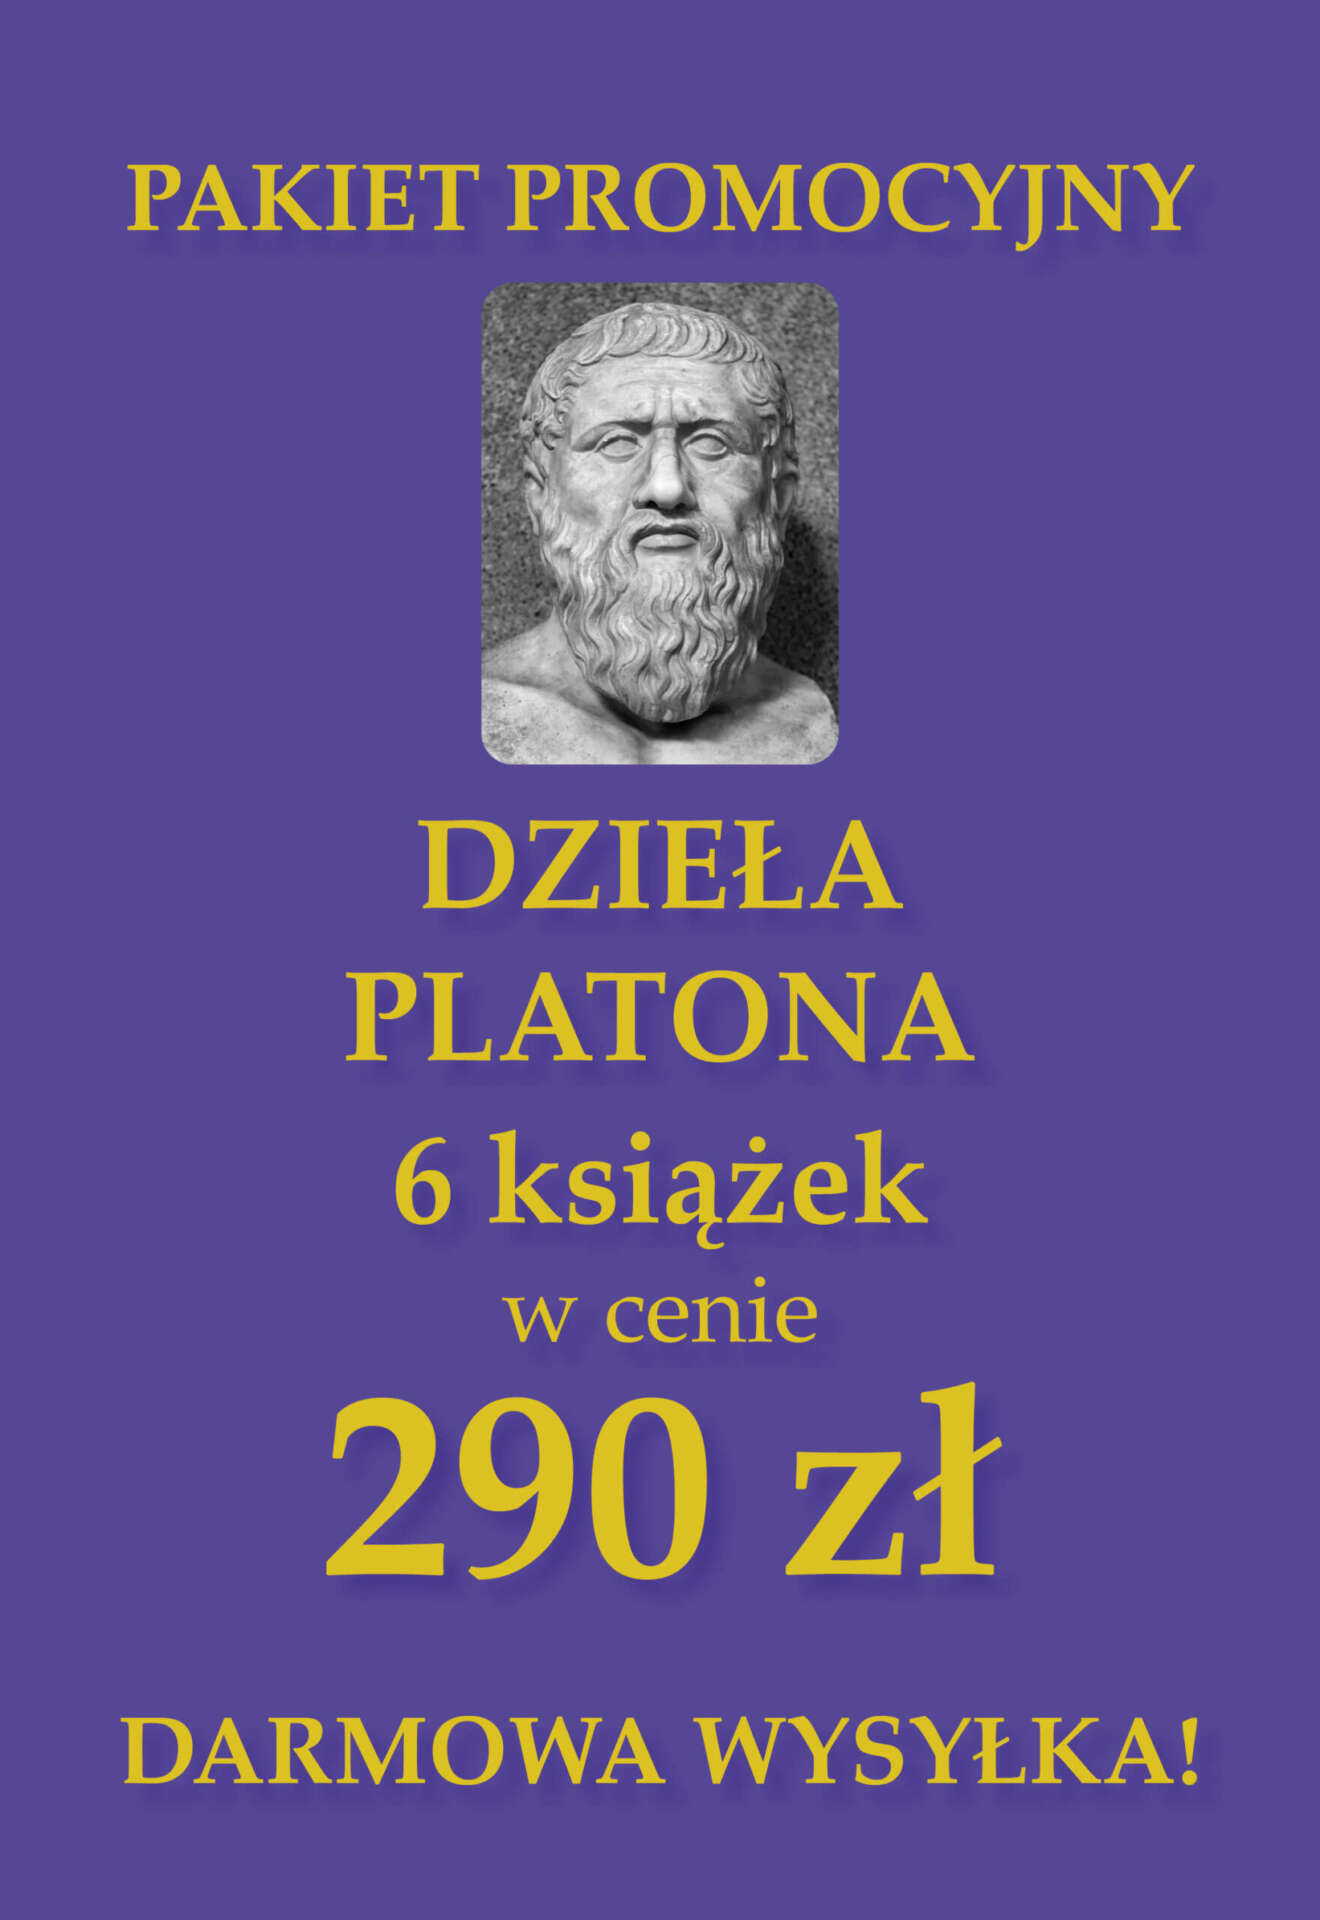 Pakiet promocyjny DZIEŁA PLATONA (6 książek)